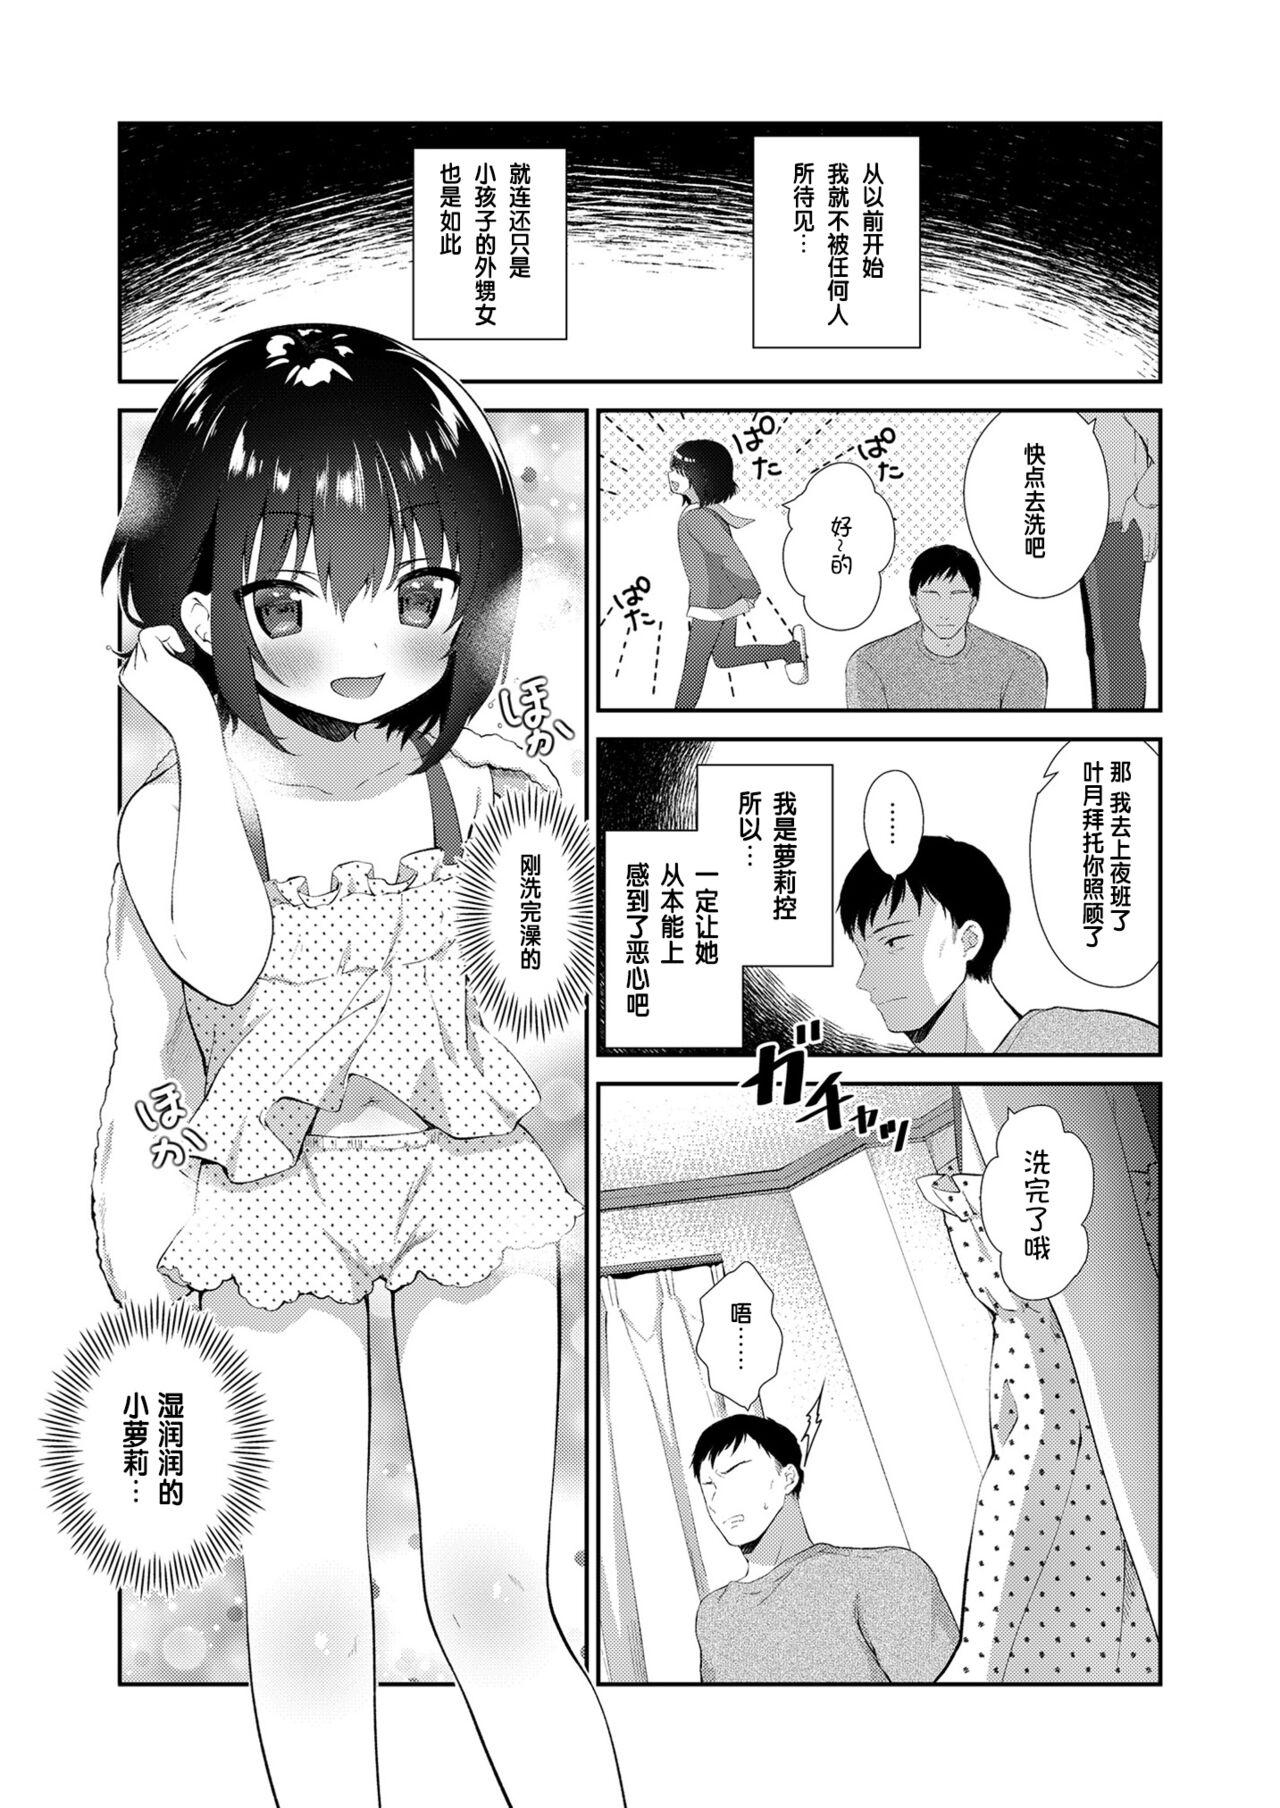 Transexual Mei ga Warui kara Shikatanai. - Original Butt - Page 2